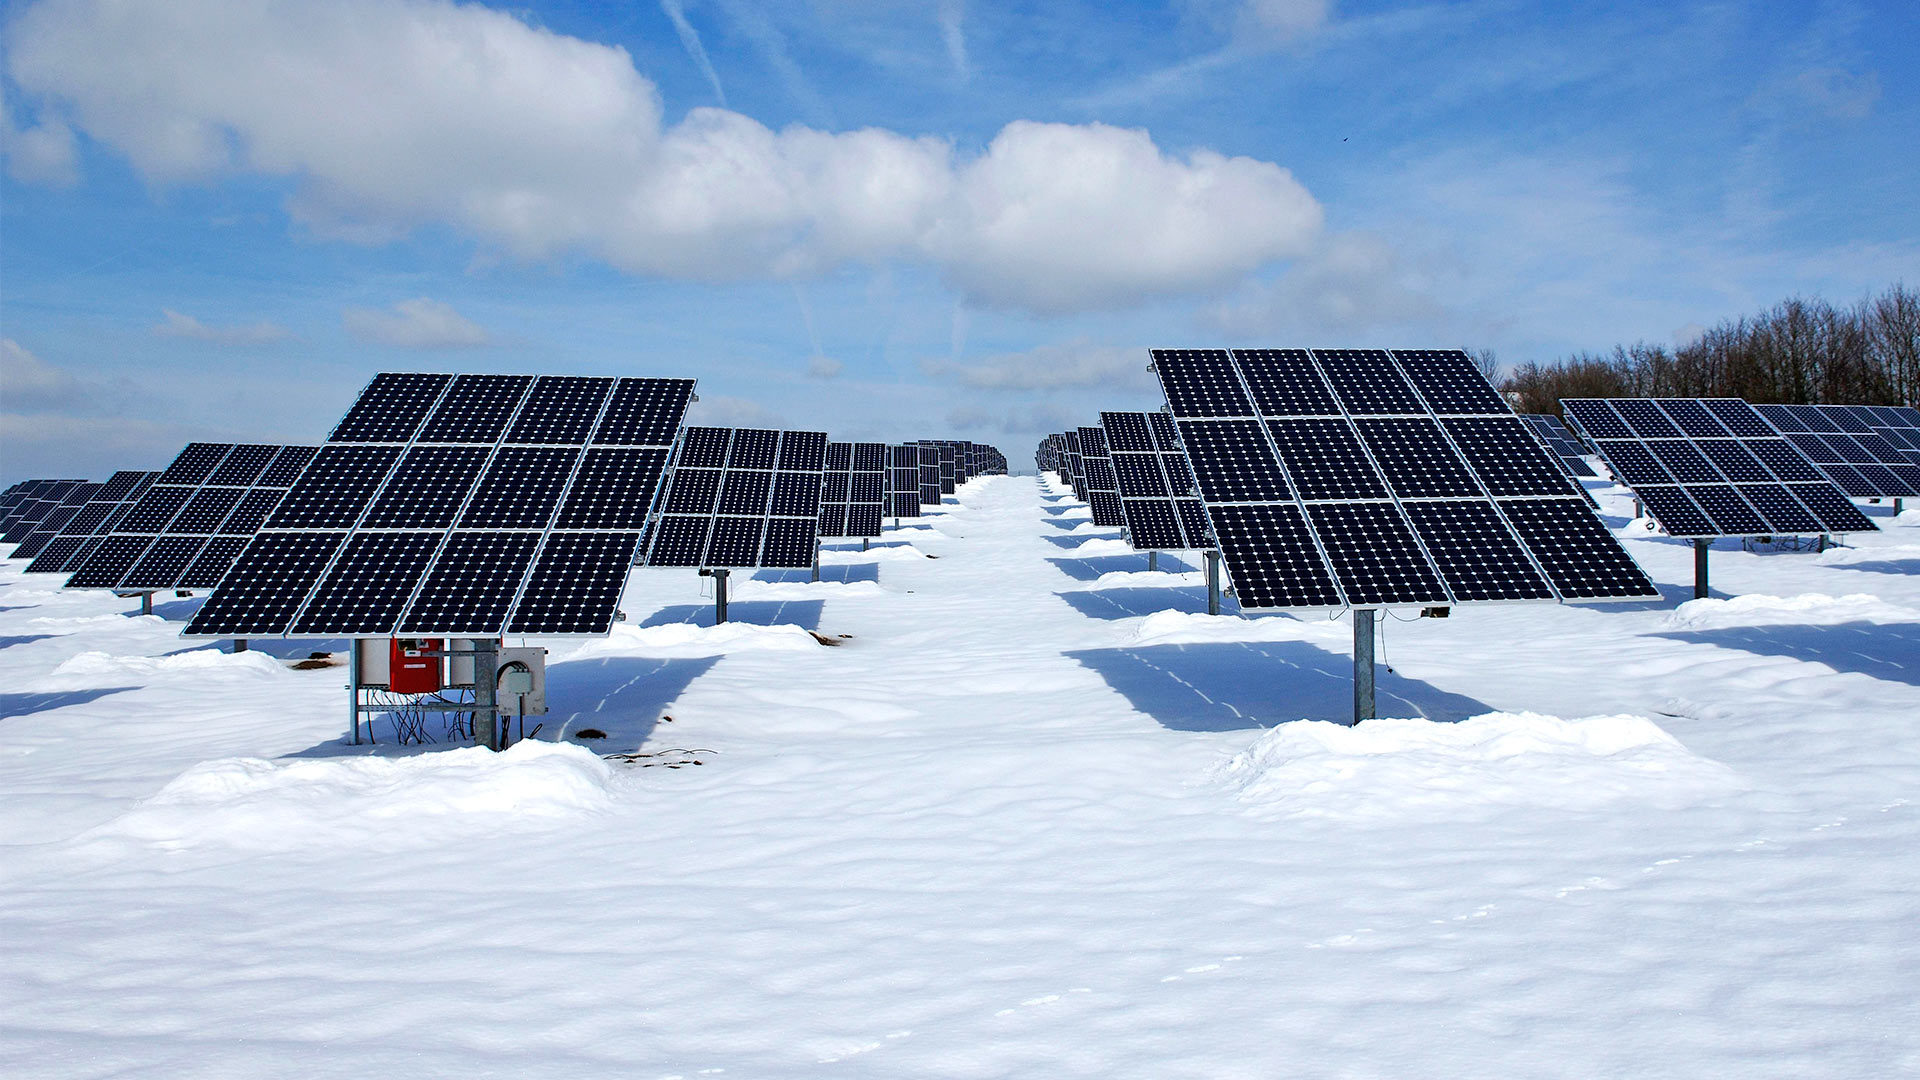 Solaranlage im Schnee | picture alliance / imageBROKER